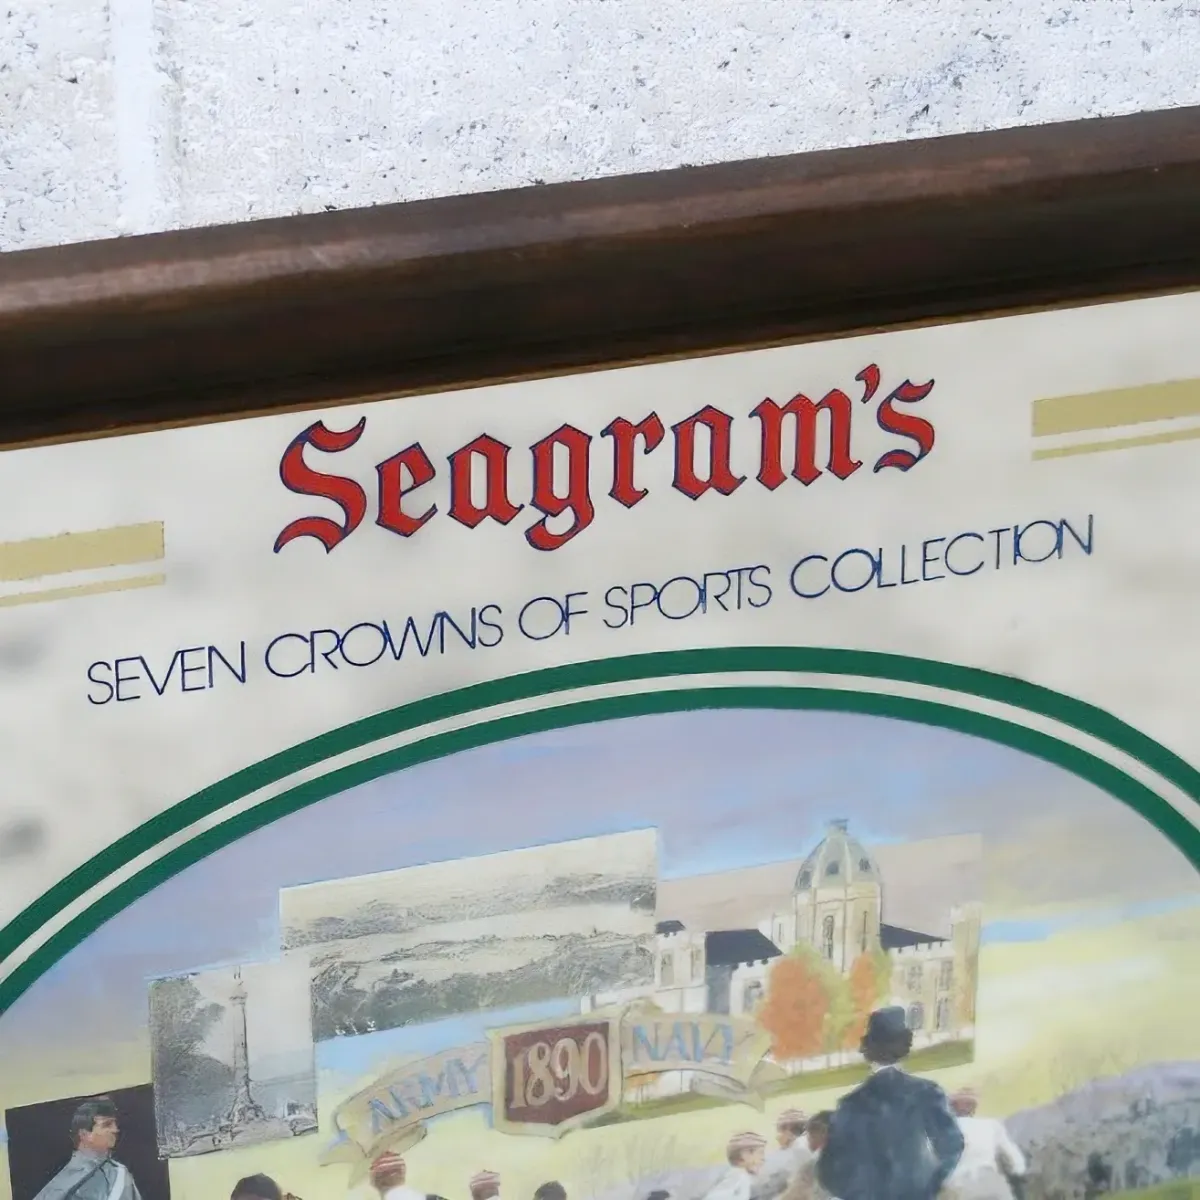 Seagram's ビンテージ パブミラー